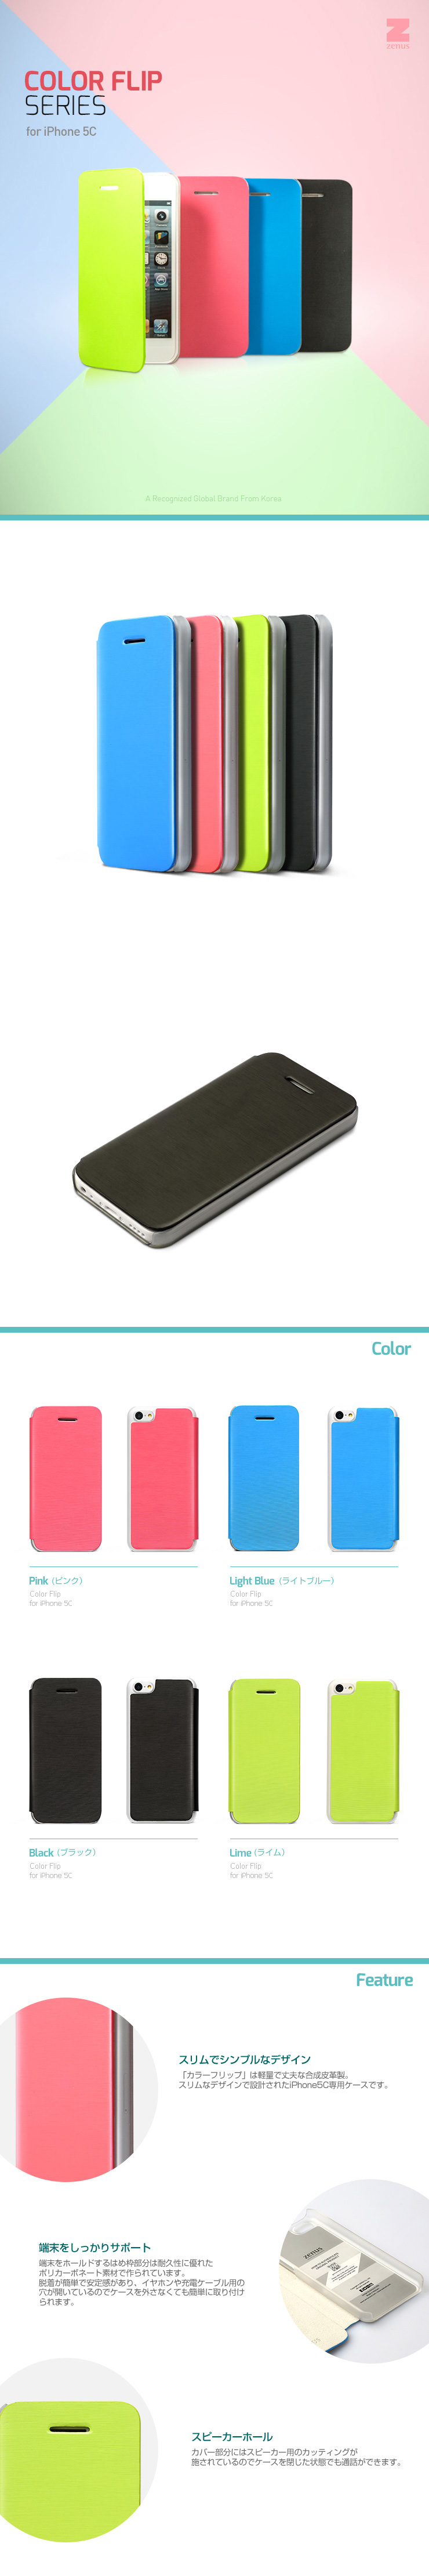 【iPhone5C】ZENUS Masstige Color Flip Case (マステージ カラーフリップケース)